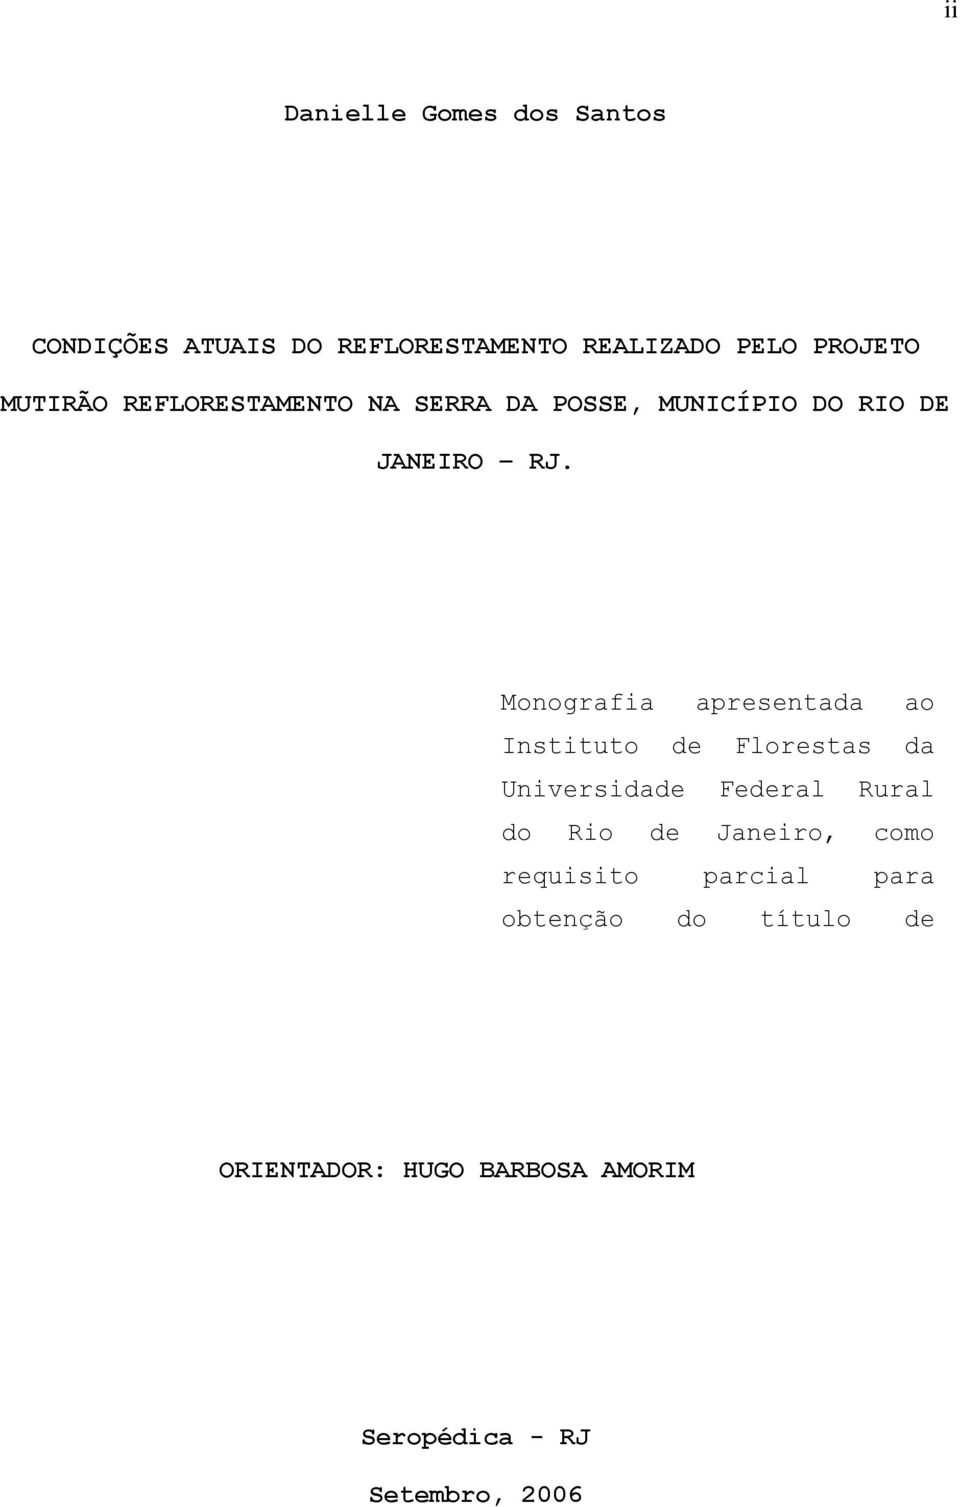 Monografia apresentada ao Instituto de Florestas da Universidade Federal Rural do Rio de